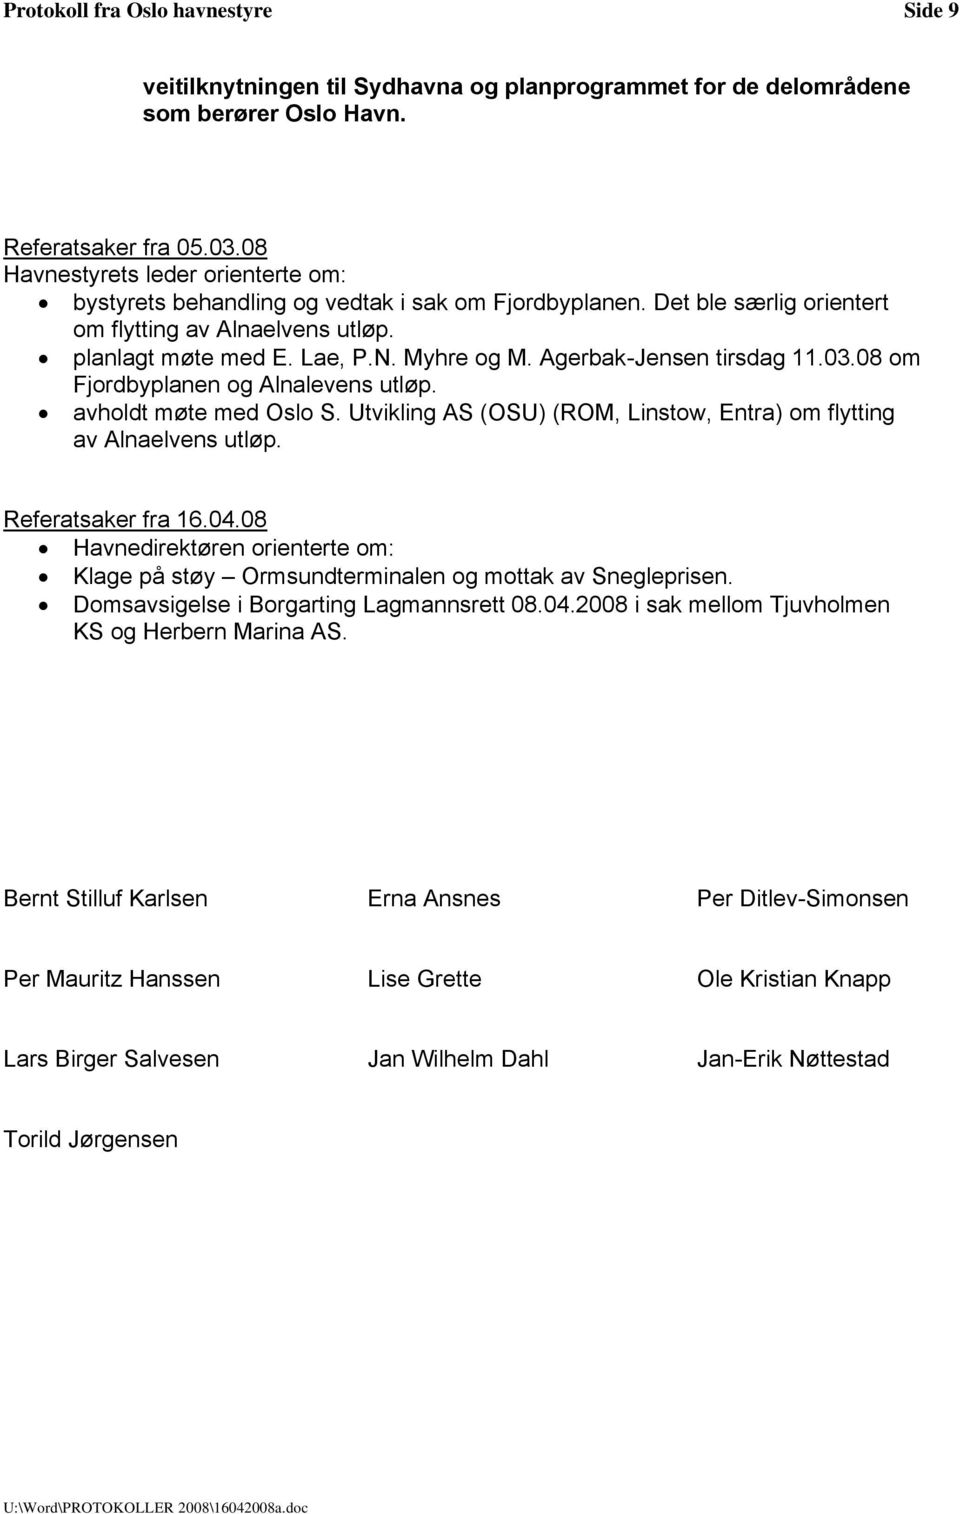 Agerbak-Jensen tirsdag 11.03.08 om Fjordbyplanen og Alnalevens utløp. avholdt møte med Oslo S. Utvikling AS (OSU) (ROM, Linstow, Entra) om flytting av Alnaelvens utløp. Referatsaker fra 16.04.